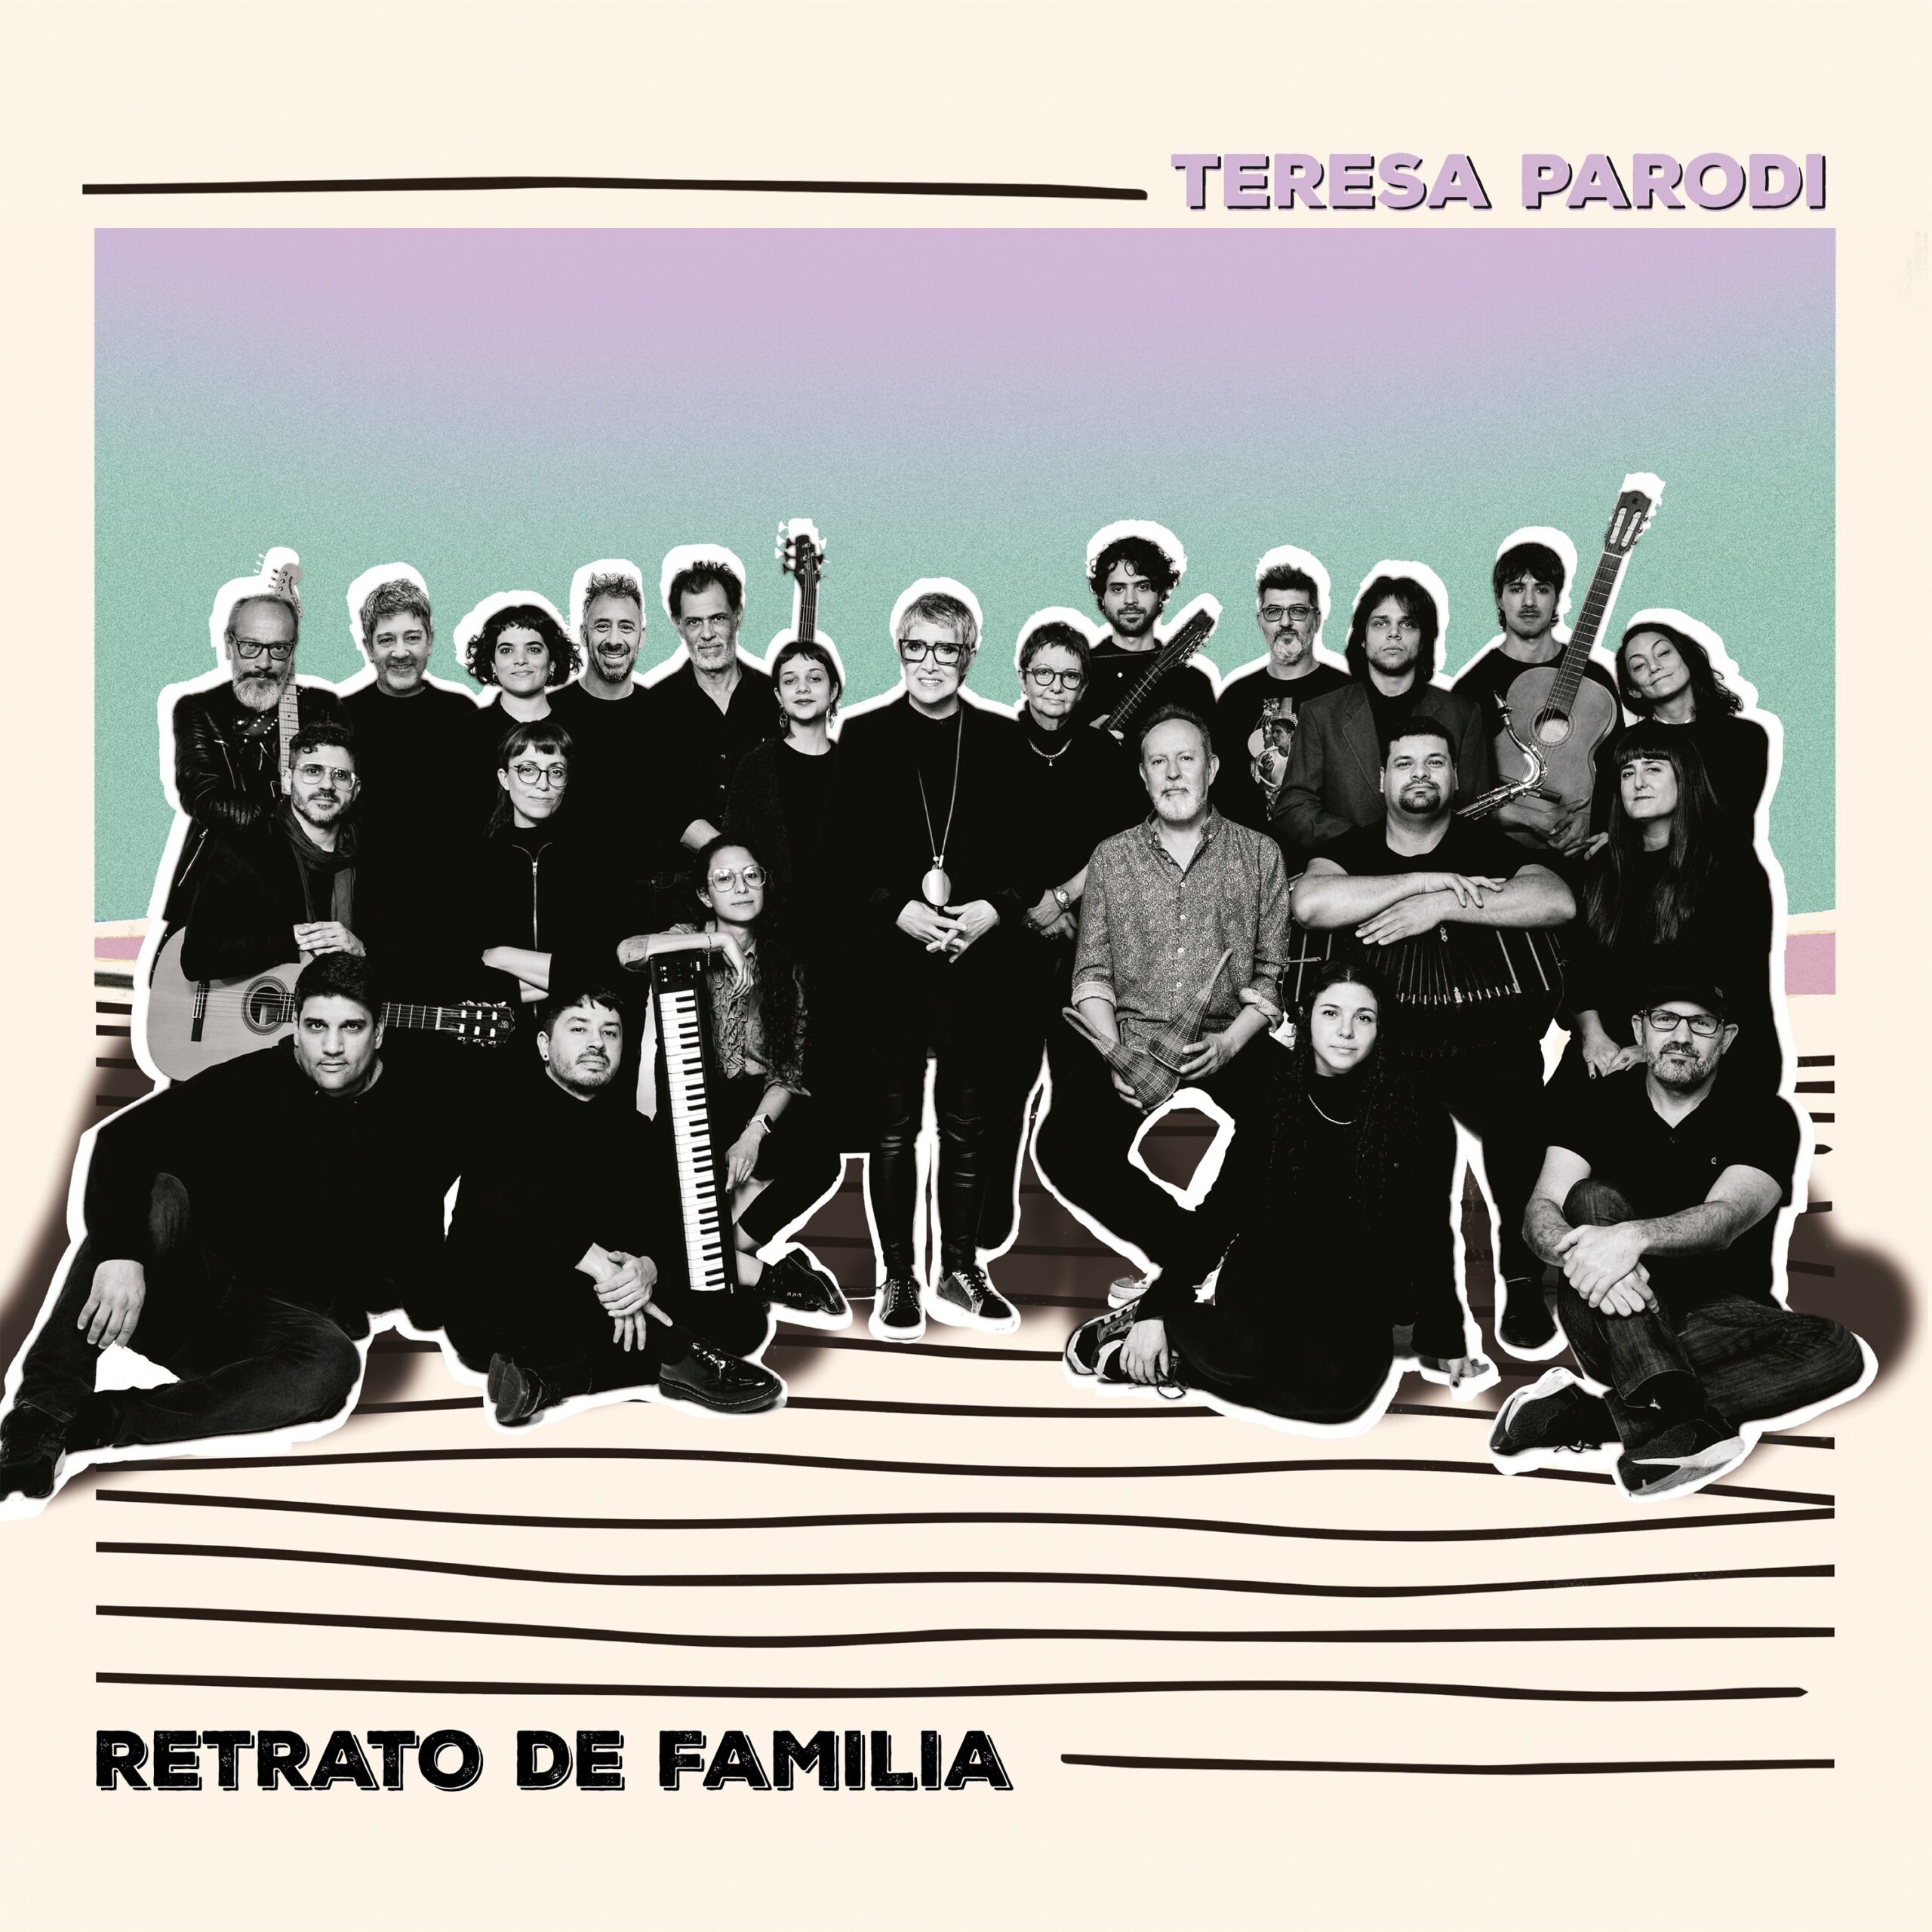 LA CANTANTE TERESA PARODI LANZÓ SU NUEVO ÁLBUM «RETRATOS DE FAMILIA», EDITADO EN CD POR SONY MUSIC.